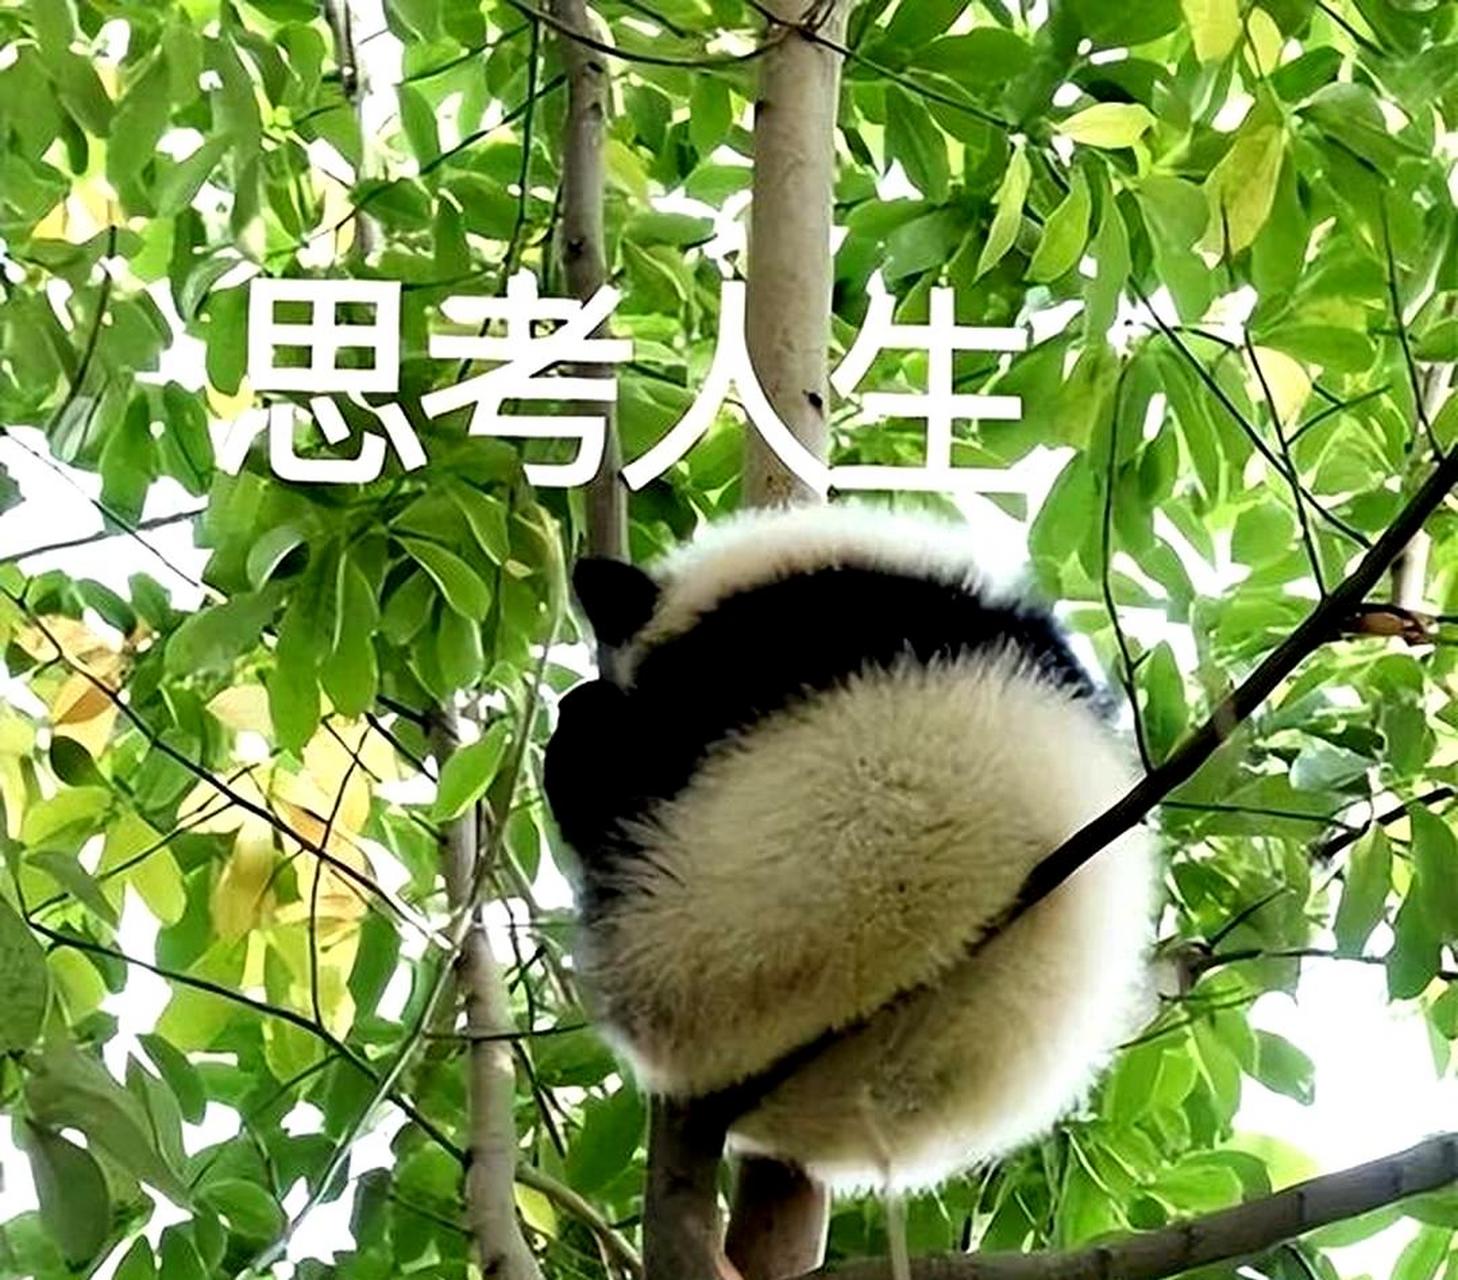 思考的熊猫表情包图片